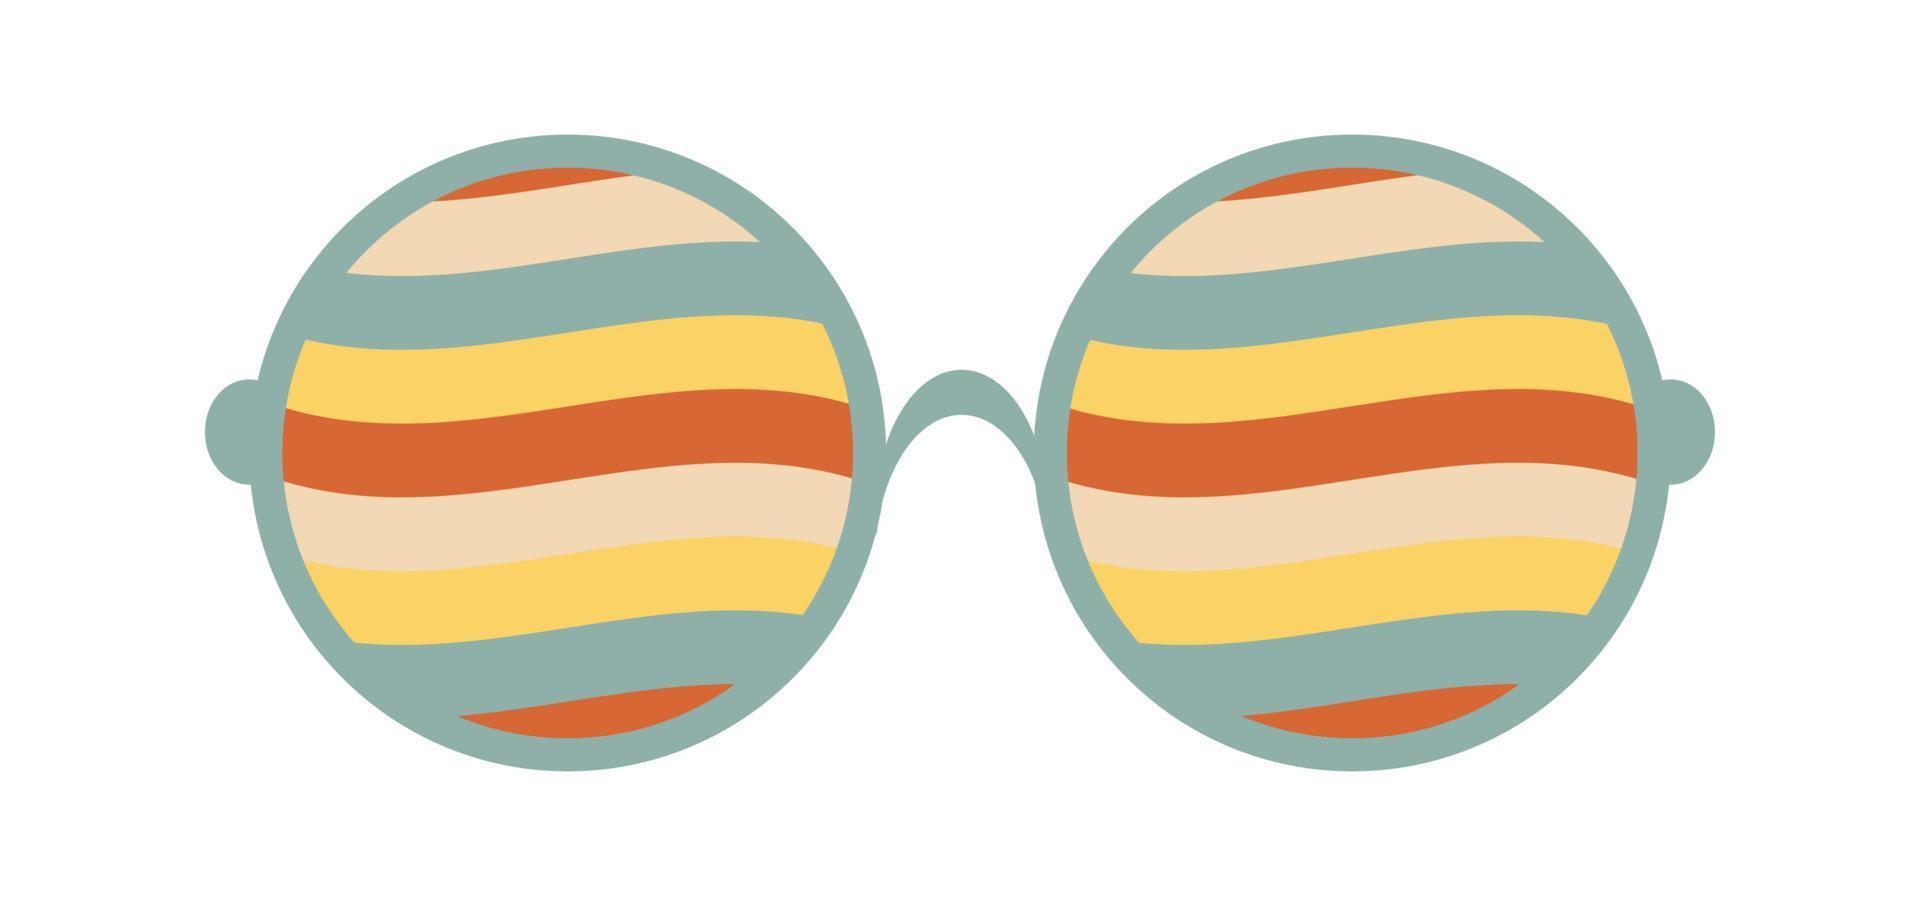 psychedelische zonnebril in de stijl van de jaren 70. retro groovy grafische elementen van een bril met regenboog, lijnen en golven. vector